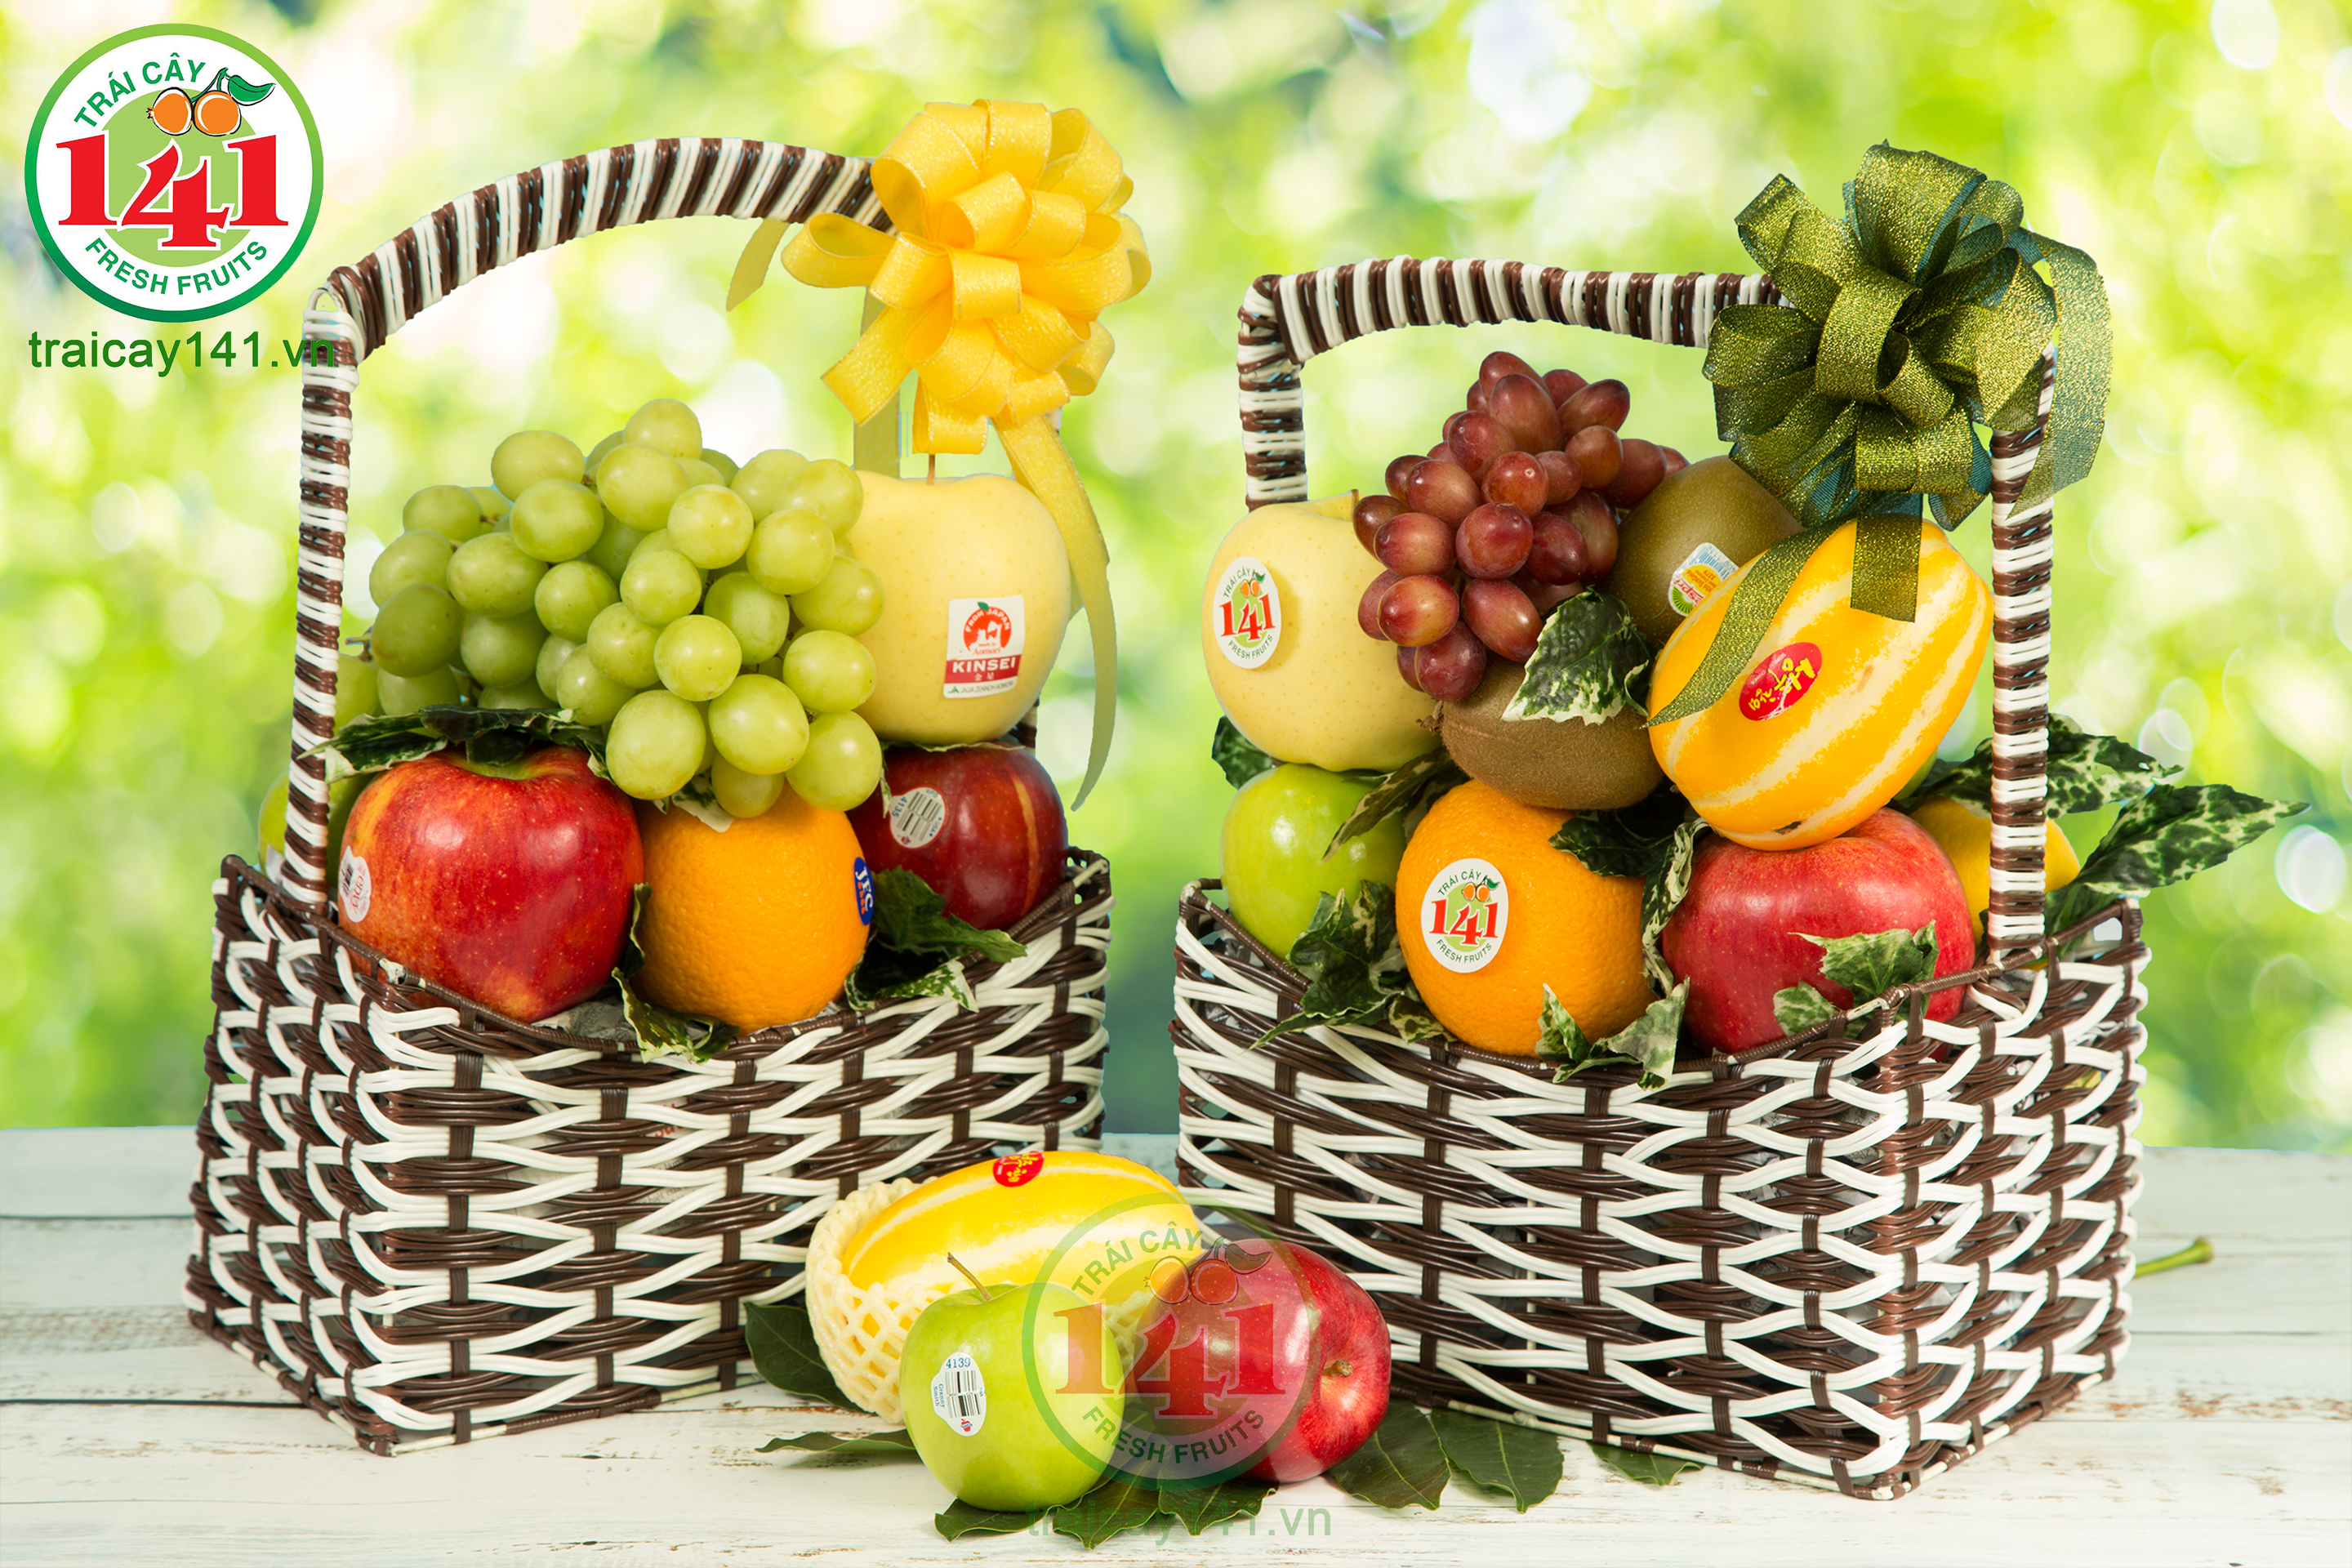 Nếu bạn yêu thích hoa quả thì bức ảnh giỏ hoa quả đẹp sẽ không làm bạn thất vọng. Những loại trái cây tươi ngon được sắp xếp đẹp mắt, tinh tế trên chiếc giỏ sành điệu. Hãy thư giãn và xem ảnh để cảm nhận vẻ đẹp và sự hoàn hảo trong sự kết hợp các loại trái cây.